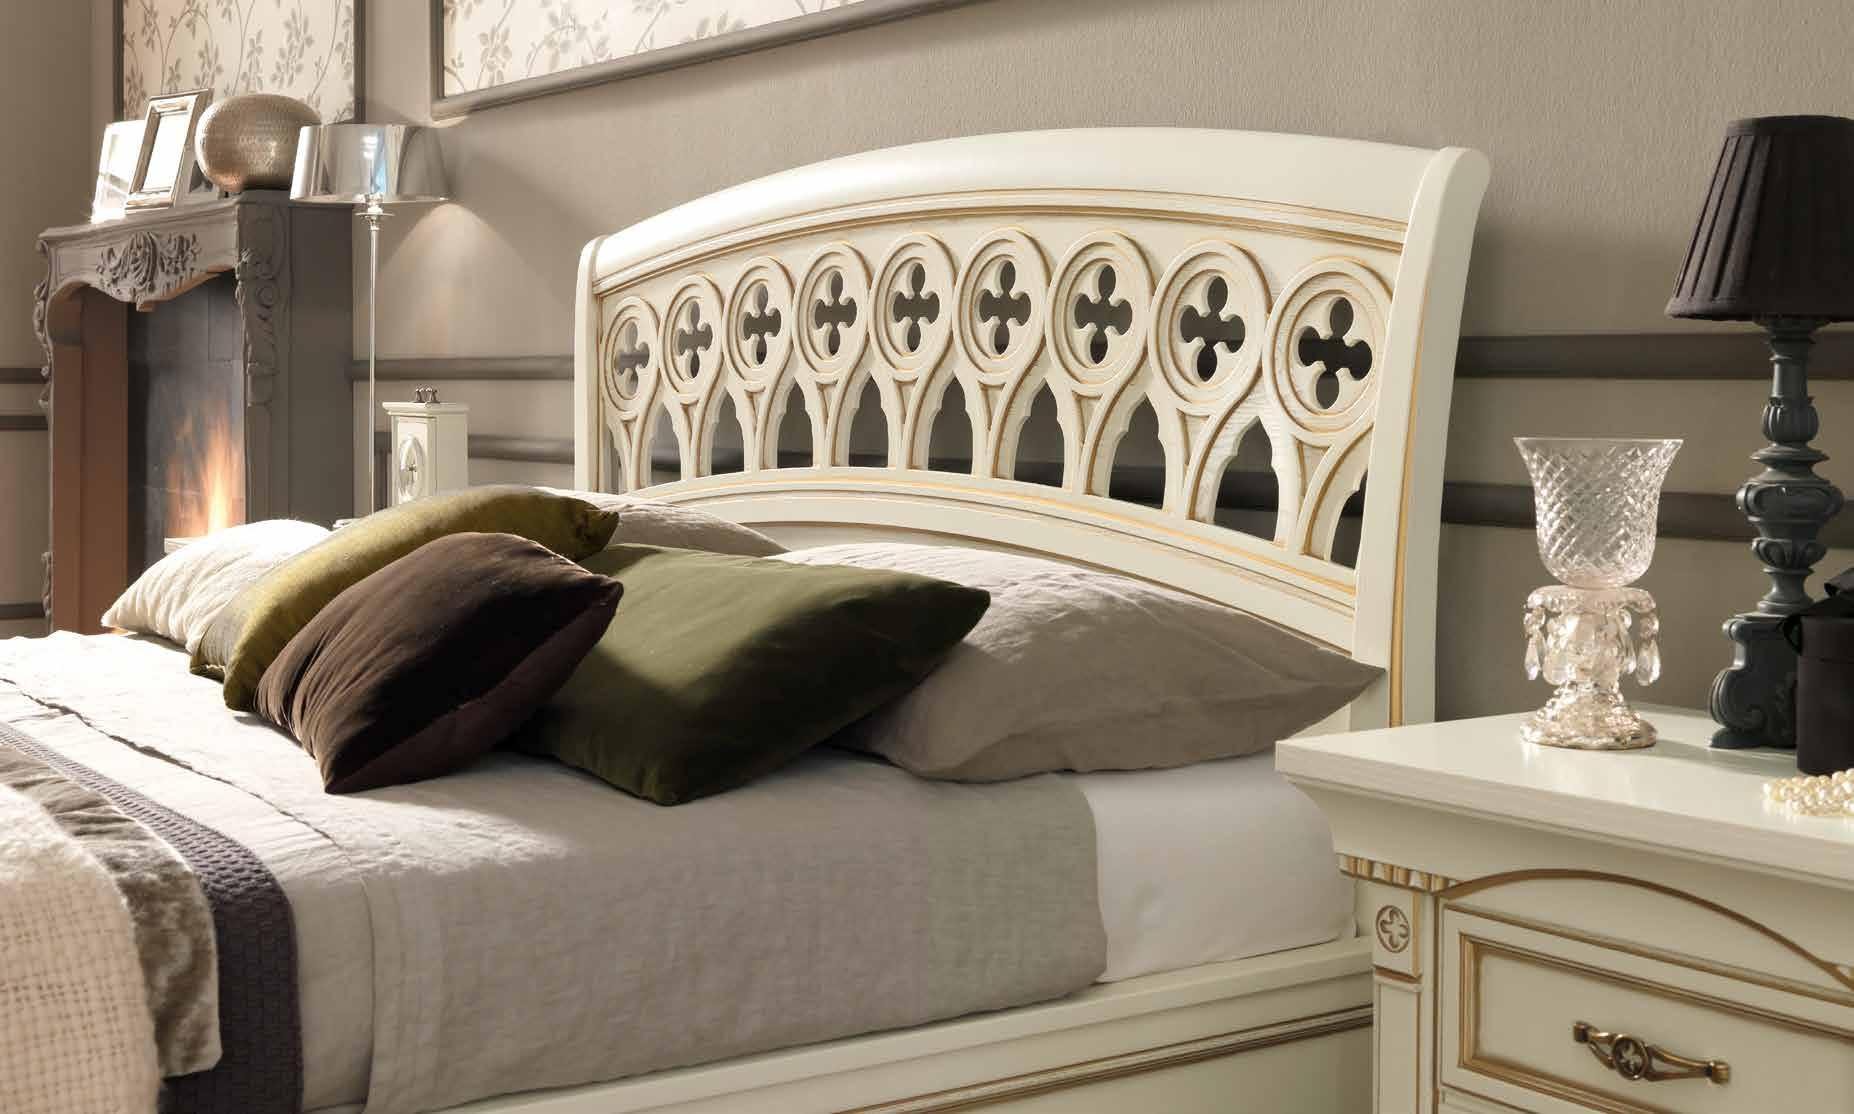 Кровать Prama Palazzo Ducale laccato, полуторная, без изножья, цвет: белый с золотом, 140x200 см (71BO23LT)71BO23LT